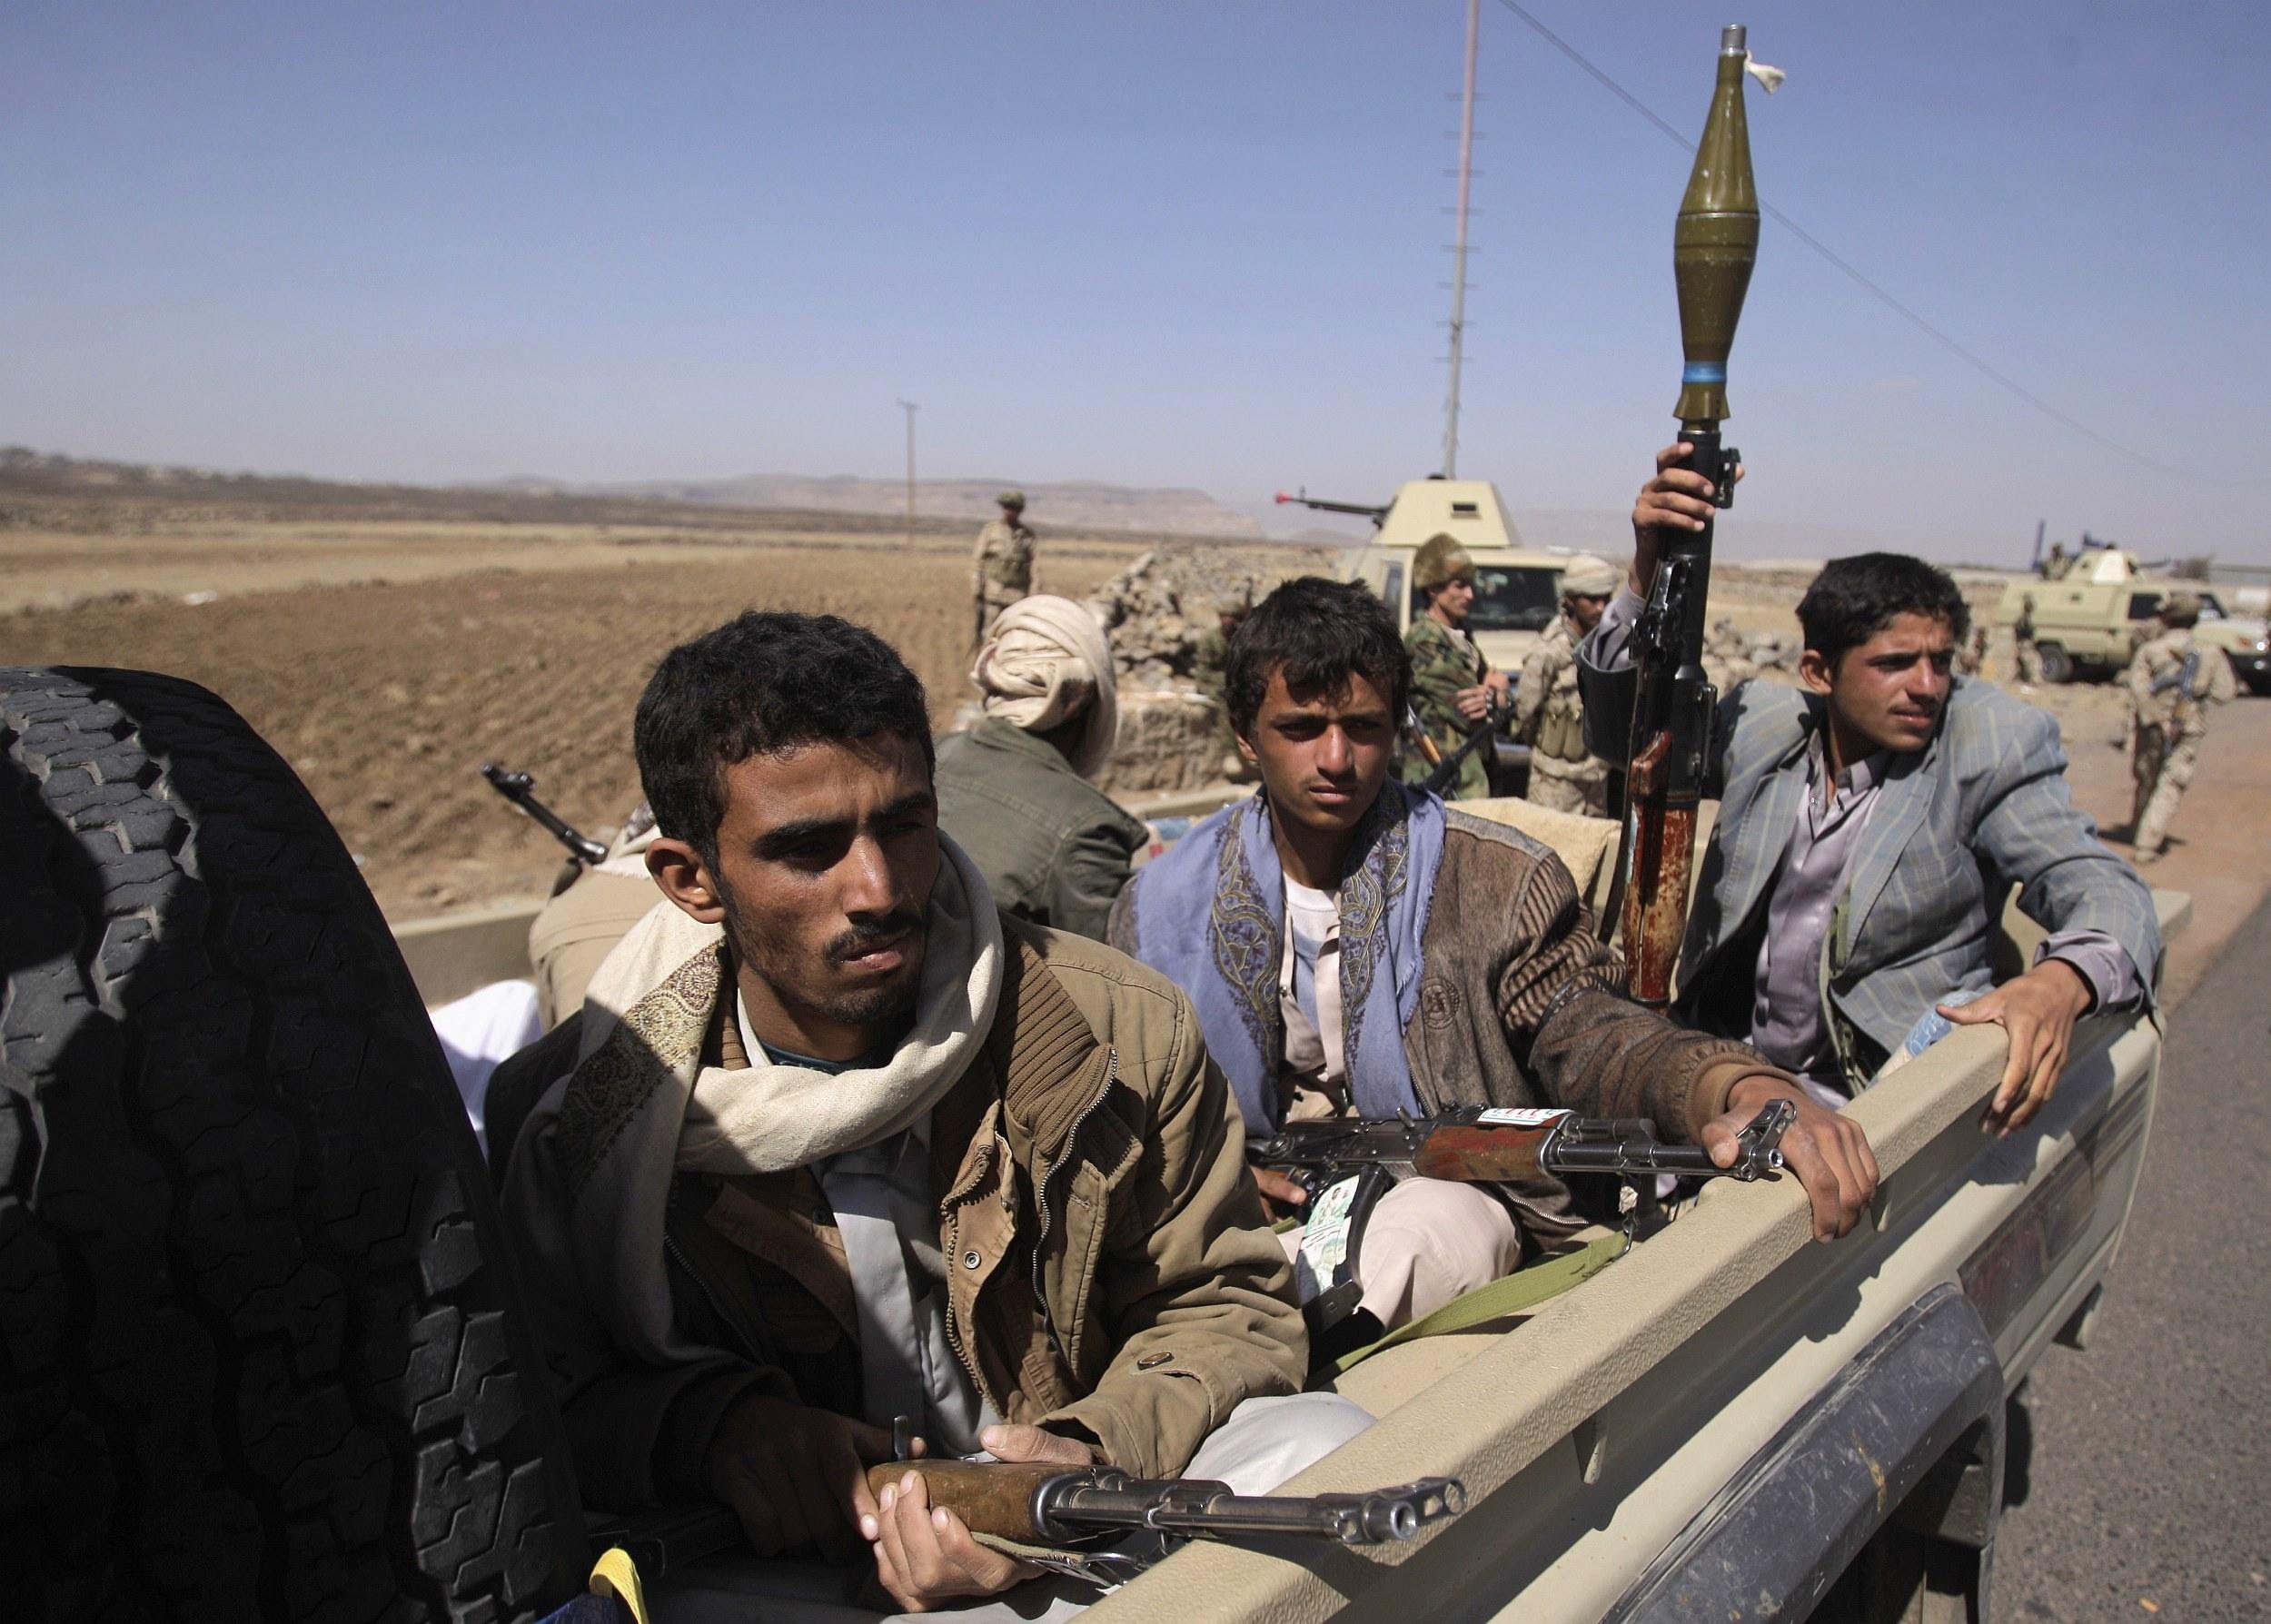 صورة الحوثيون والجيش يسيطران على اكثر من ثمانين بالمئة من الأراضي اليمنية